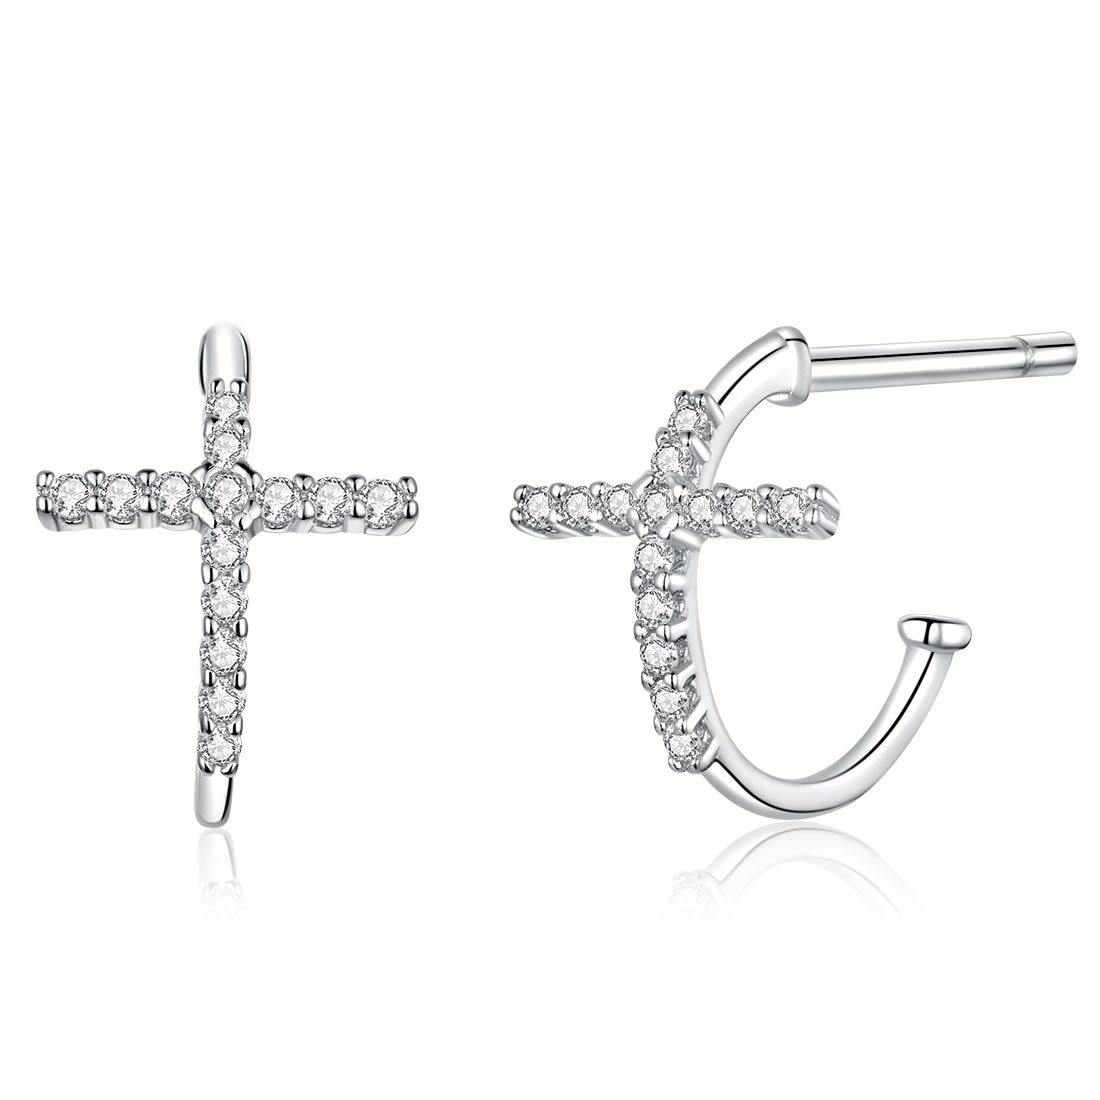 The Cross 925 Sterling Silver Earrings - Aisllin Jewelry